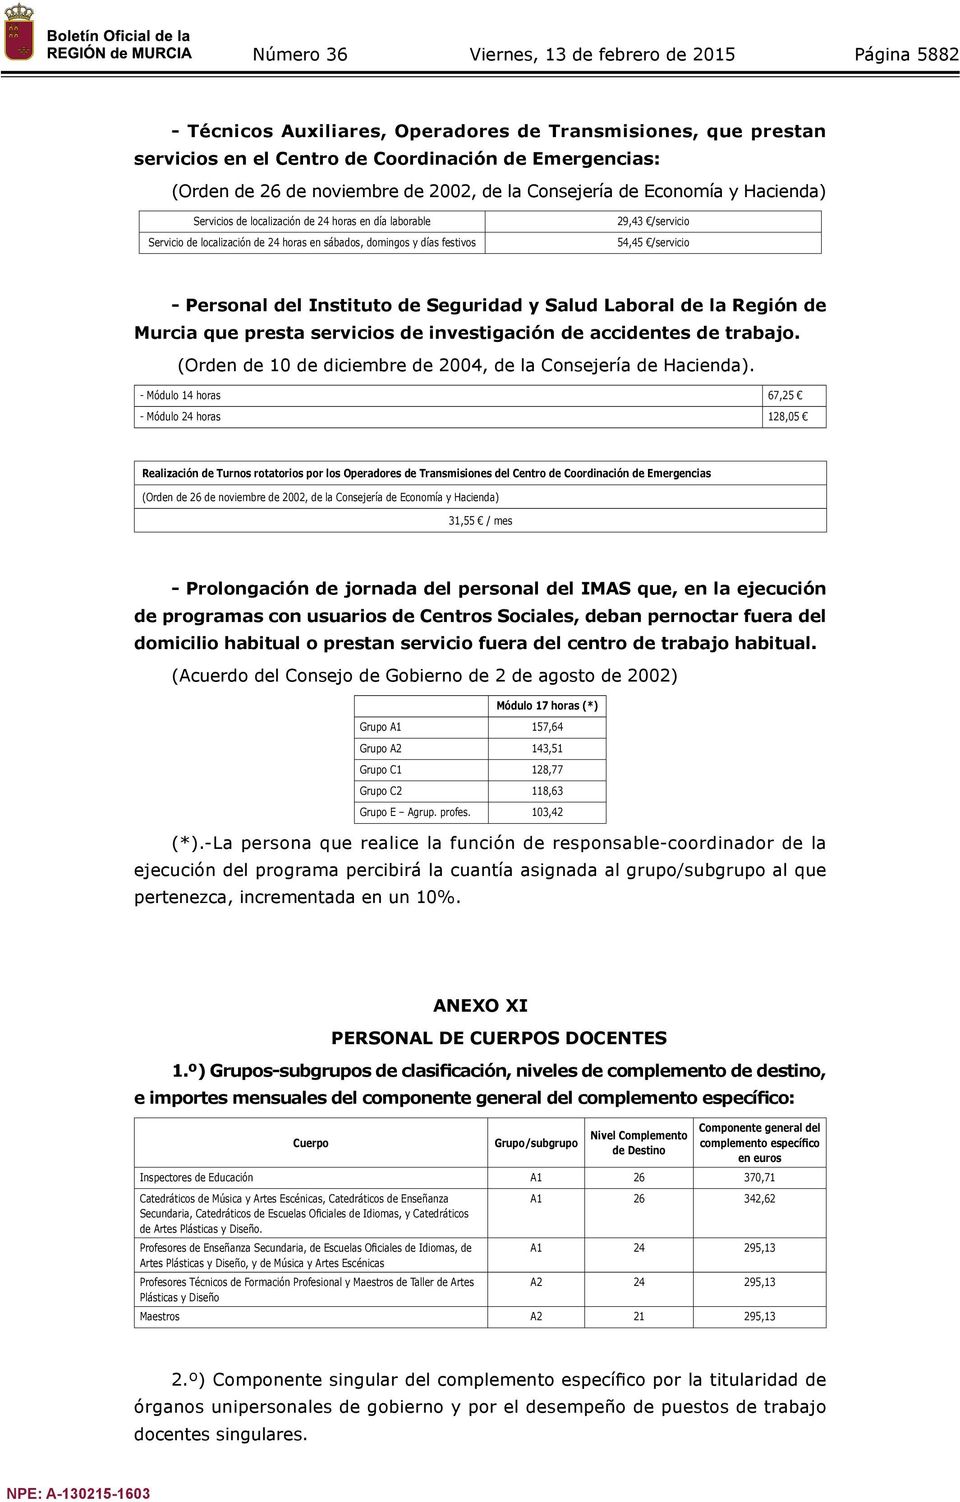 Seguridad y Salud Laboral de la Región de Murcia que presta servicios de investigación de accidentes de trabajo. (Orden de 10 de diciembre de 2004, de la Consejería de Hacienda).